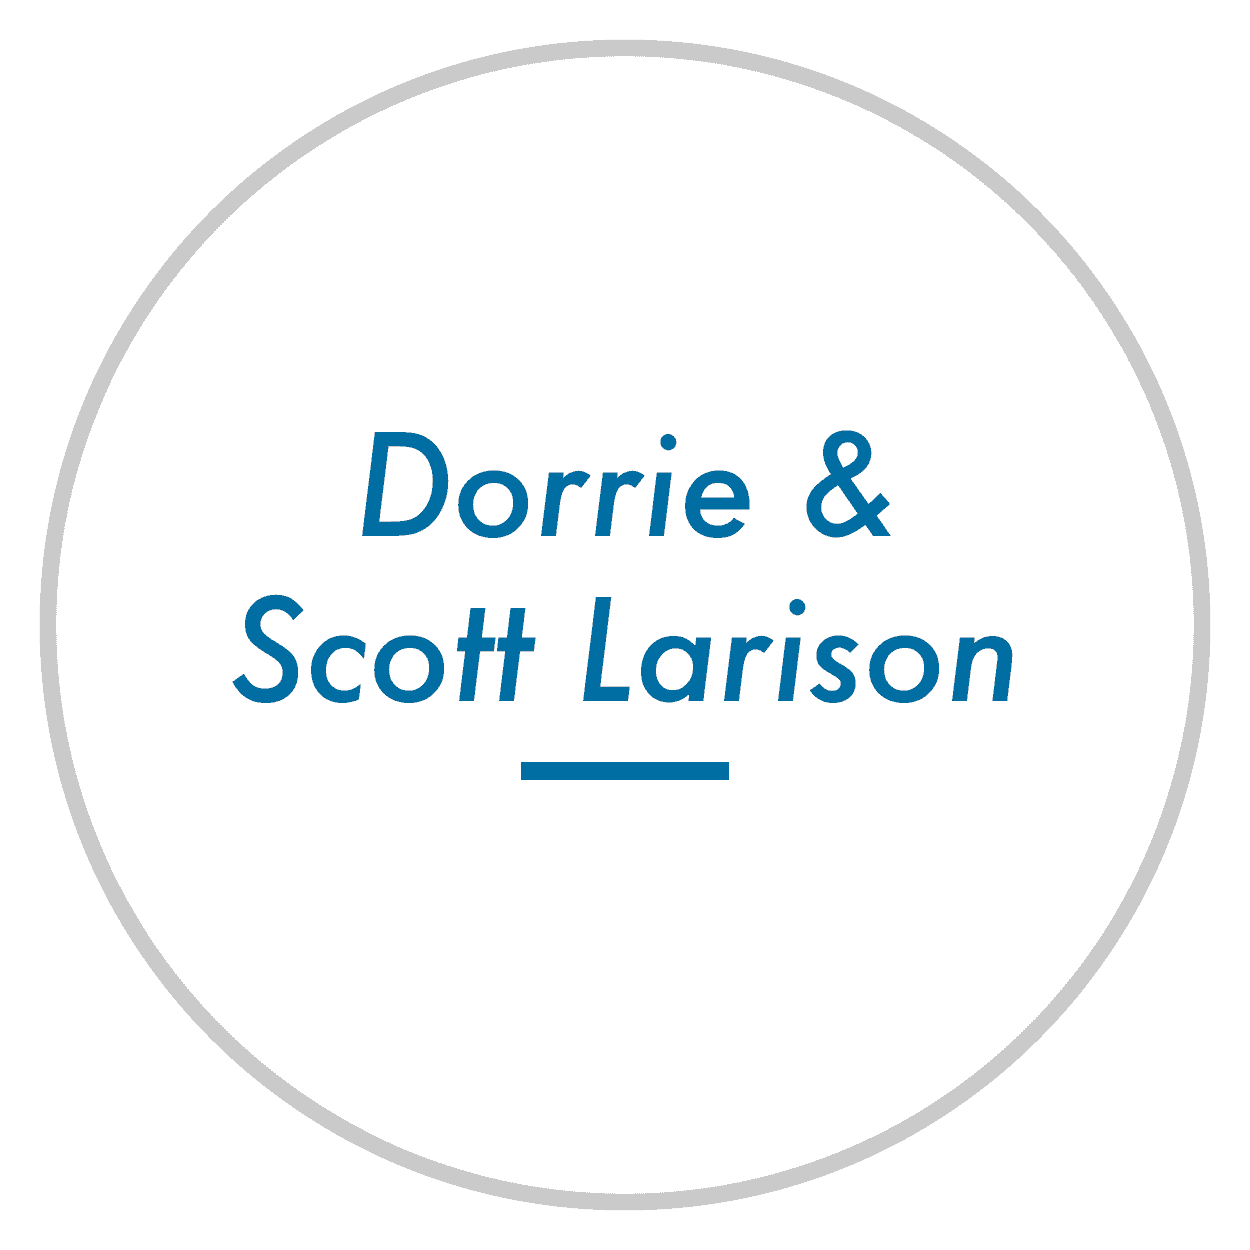 Dorrie & Scott Larison